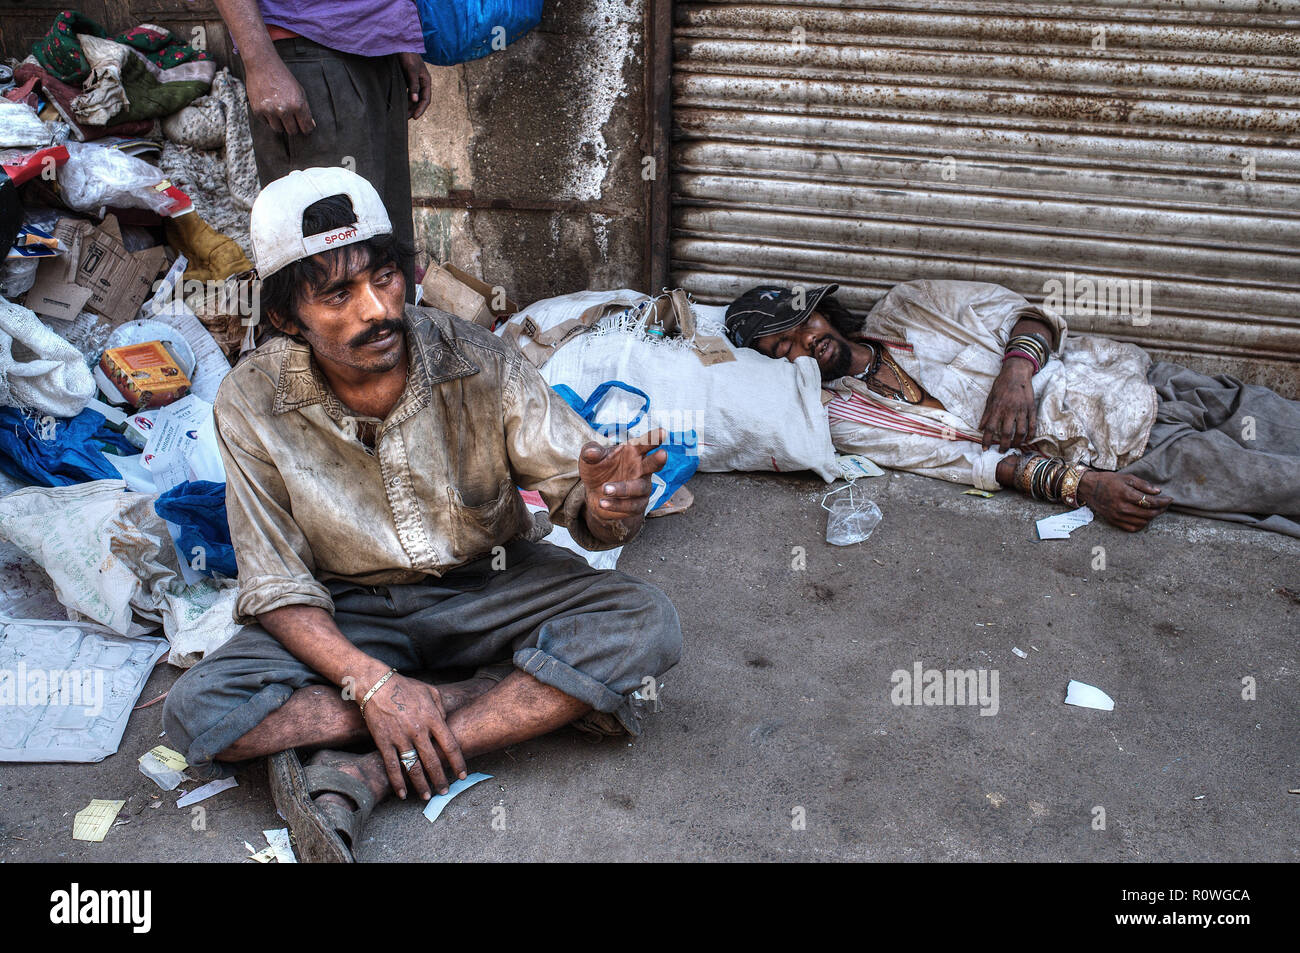 Tossicodipendenti in una corsia filth-sparged nella famigerata zona di Dongri di Mumbai, India, principalmente usando una versione economica di eroina chiamata 'zucchero di canna' Foto Stock